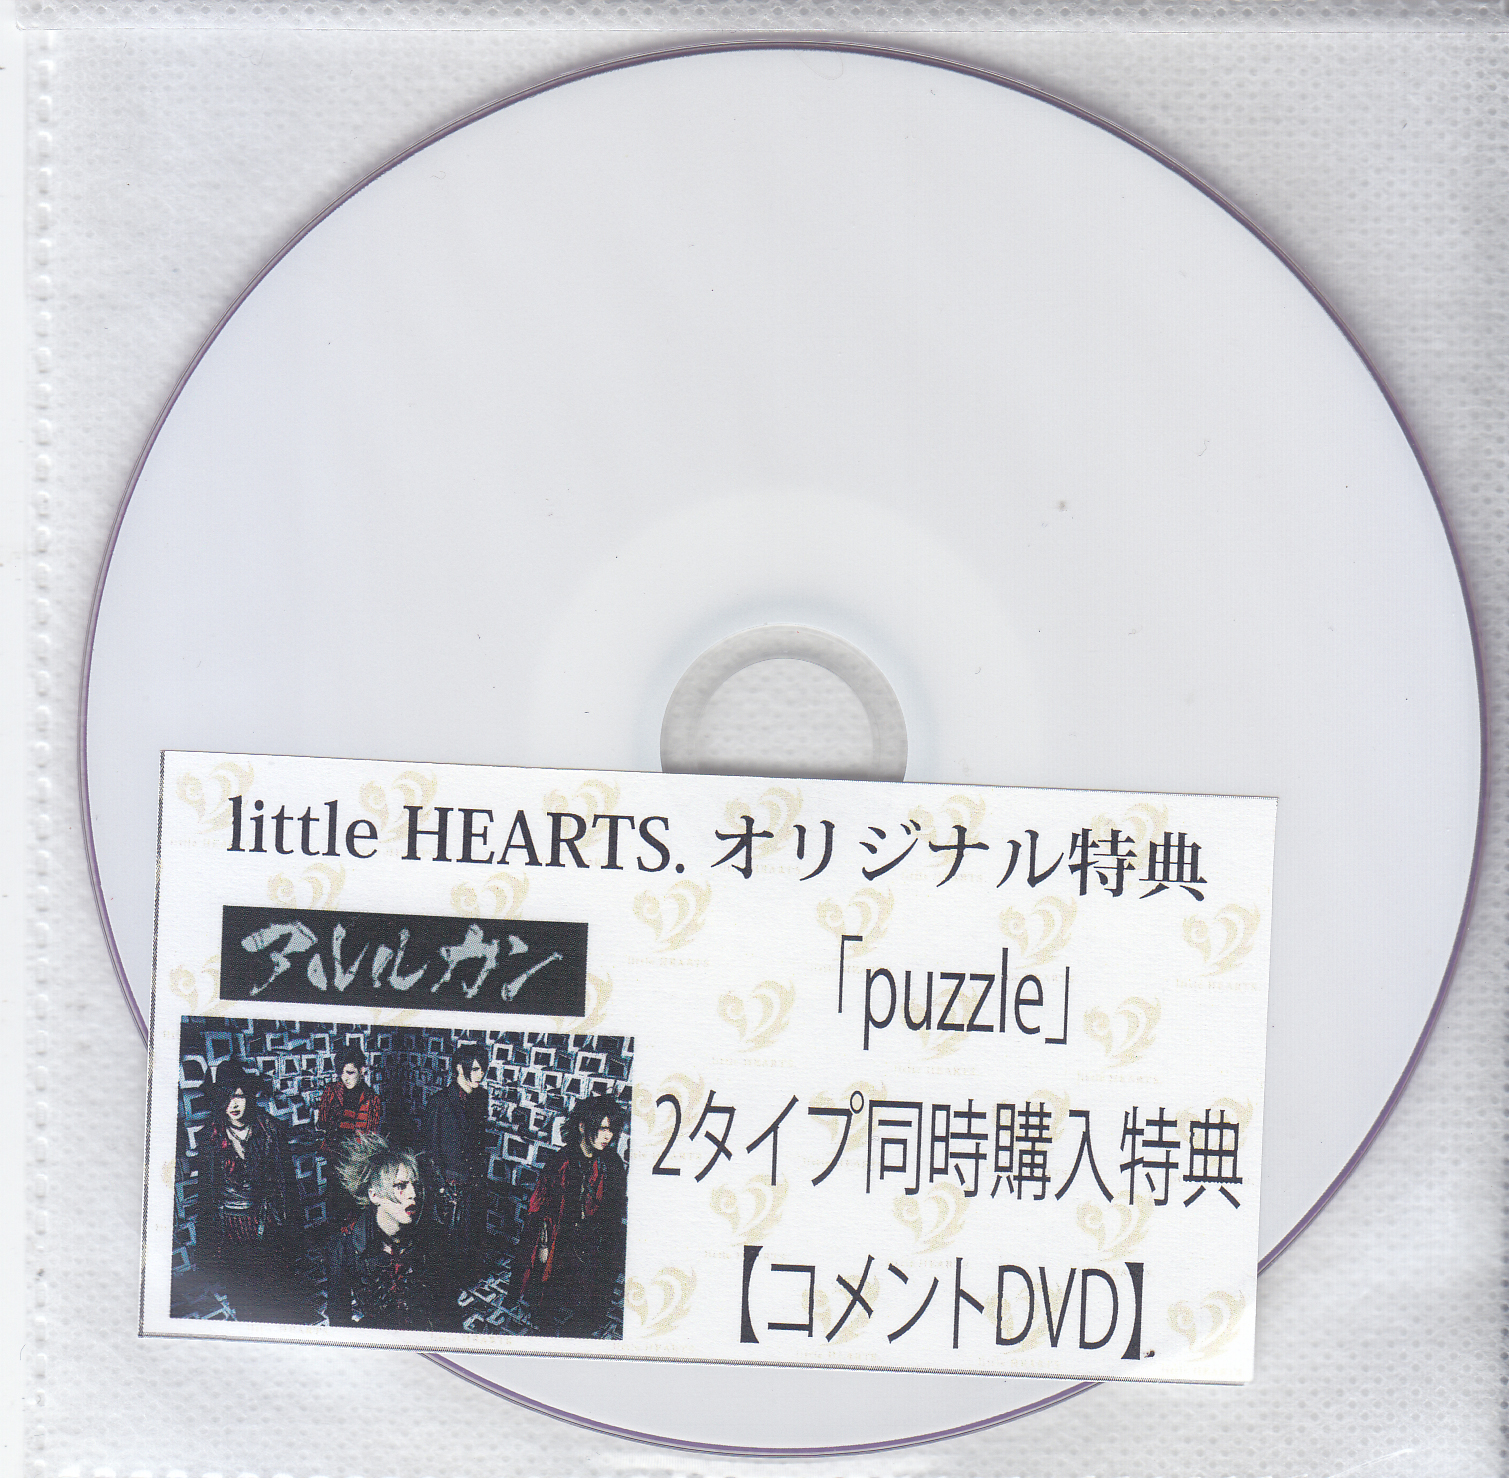 アルルカン ( アルルカン )  の DVD 【little HEARTS特典DVD-R】puzzle